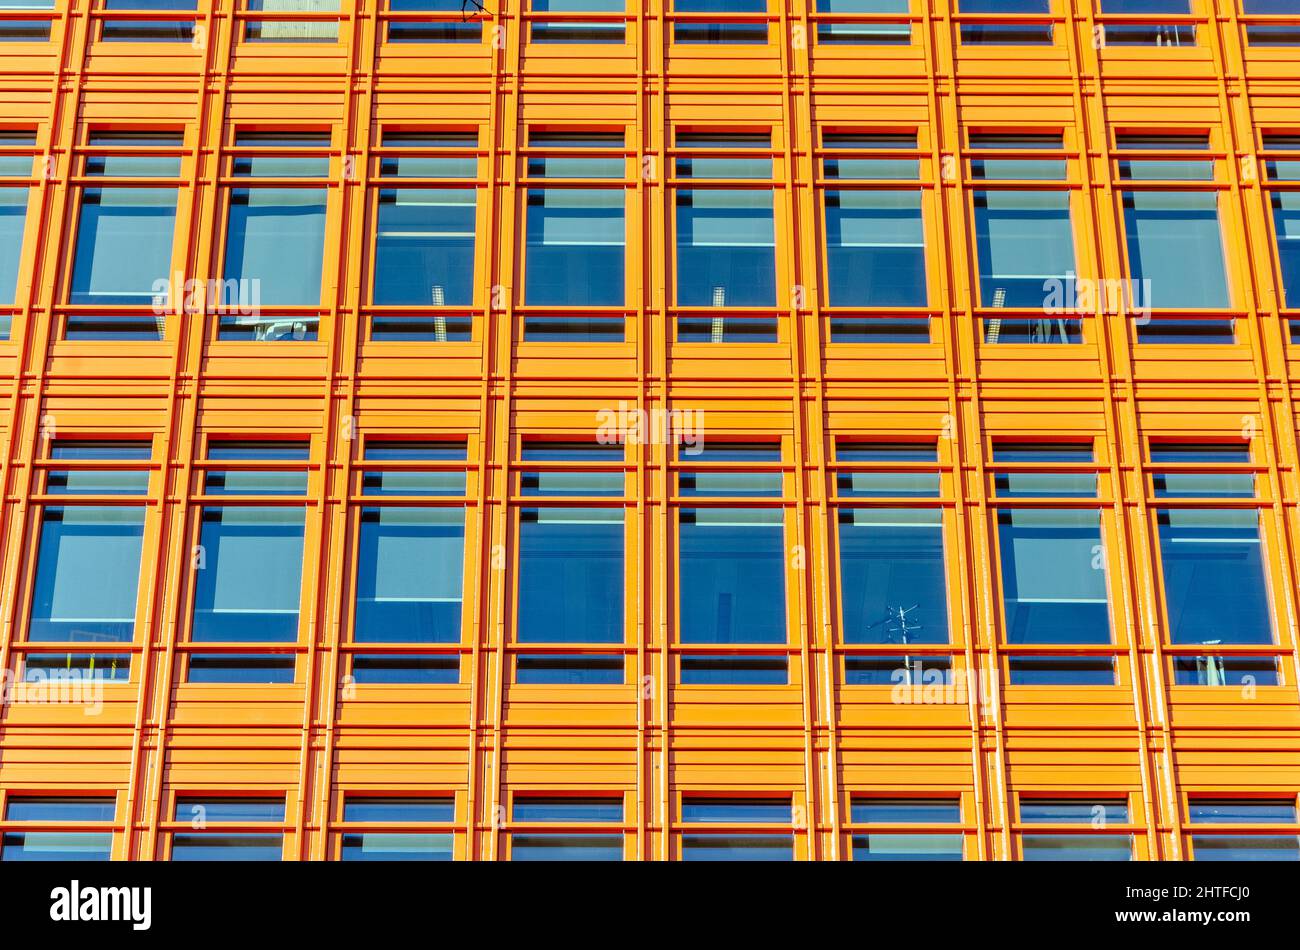 Nahaufnahme der Fenster in einem modernen, modernen Bürogebäude. Die Fenster sind in regelmäßigen, einheitlichen geometrischen Zeilen und Spalten angeordnet Stockfoto